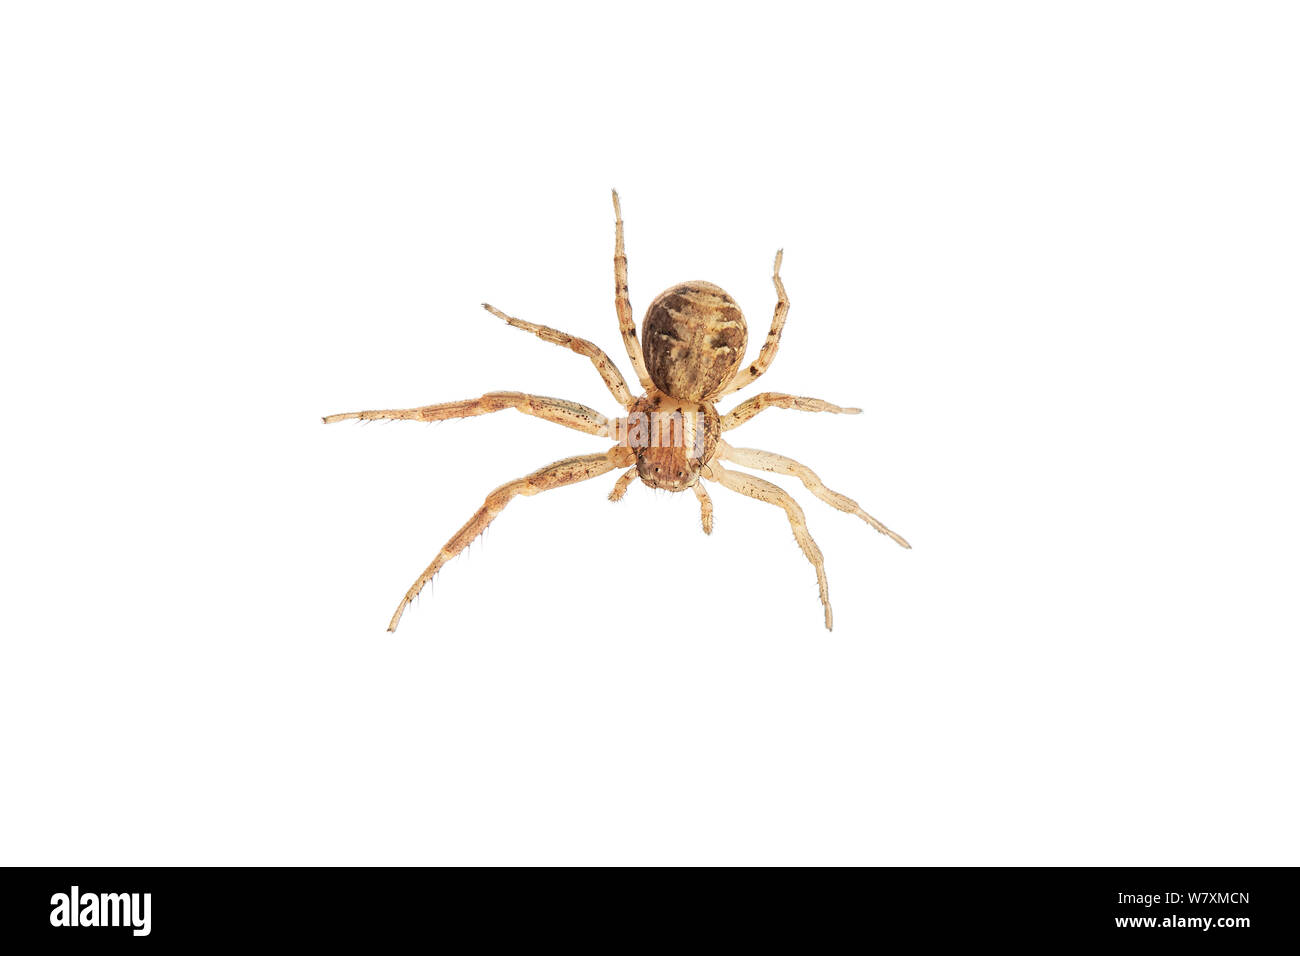 Crab spider (Xysticus cristatus) Barnt Green, Worcestershire, UK, June. meetyourneighbours.net project Stock Photo